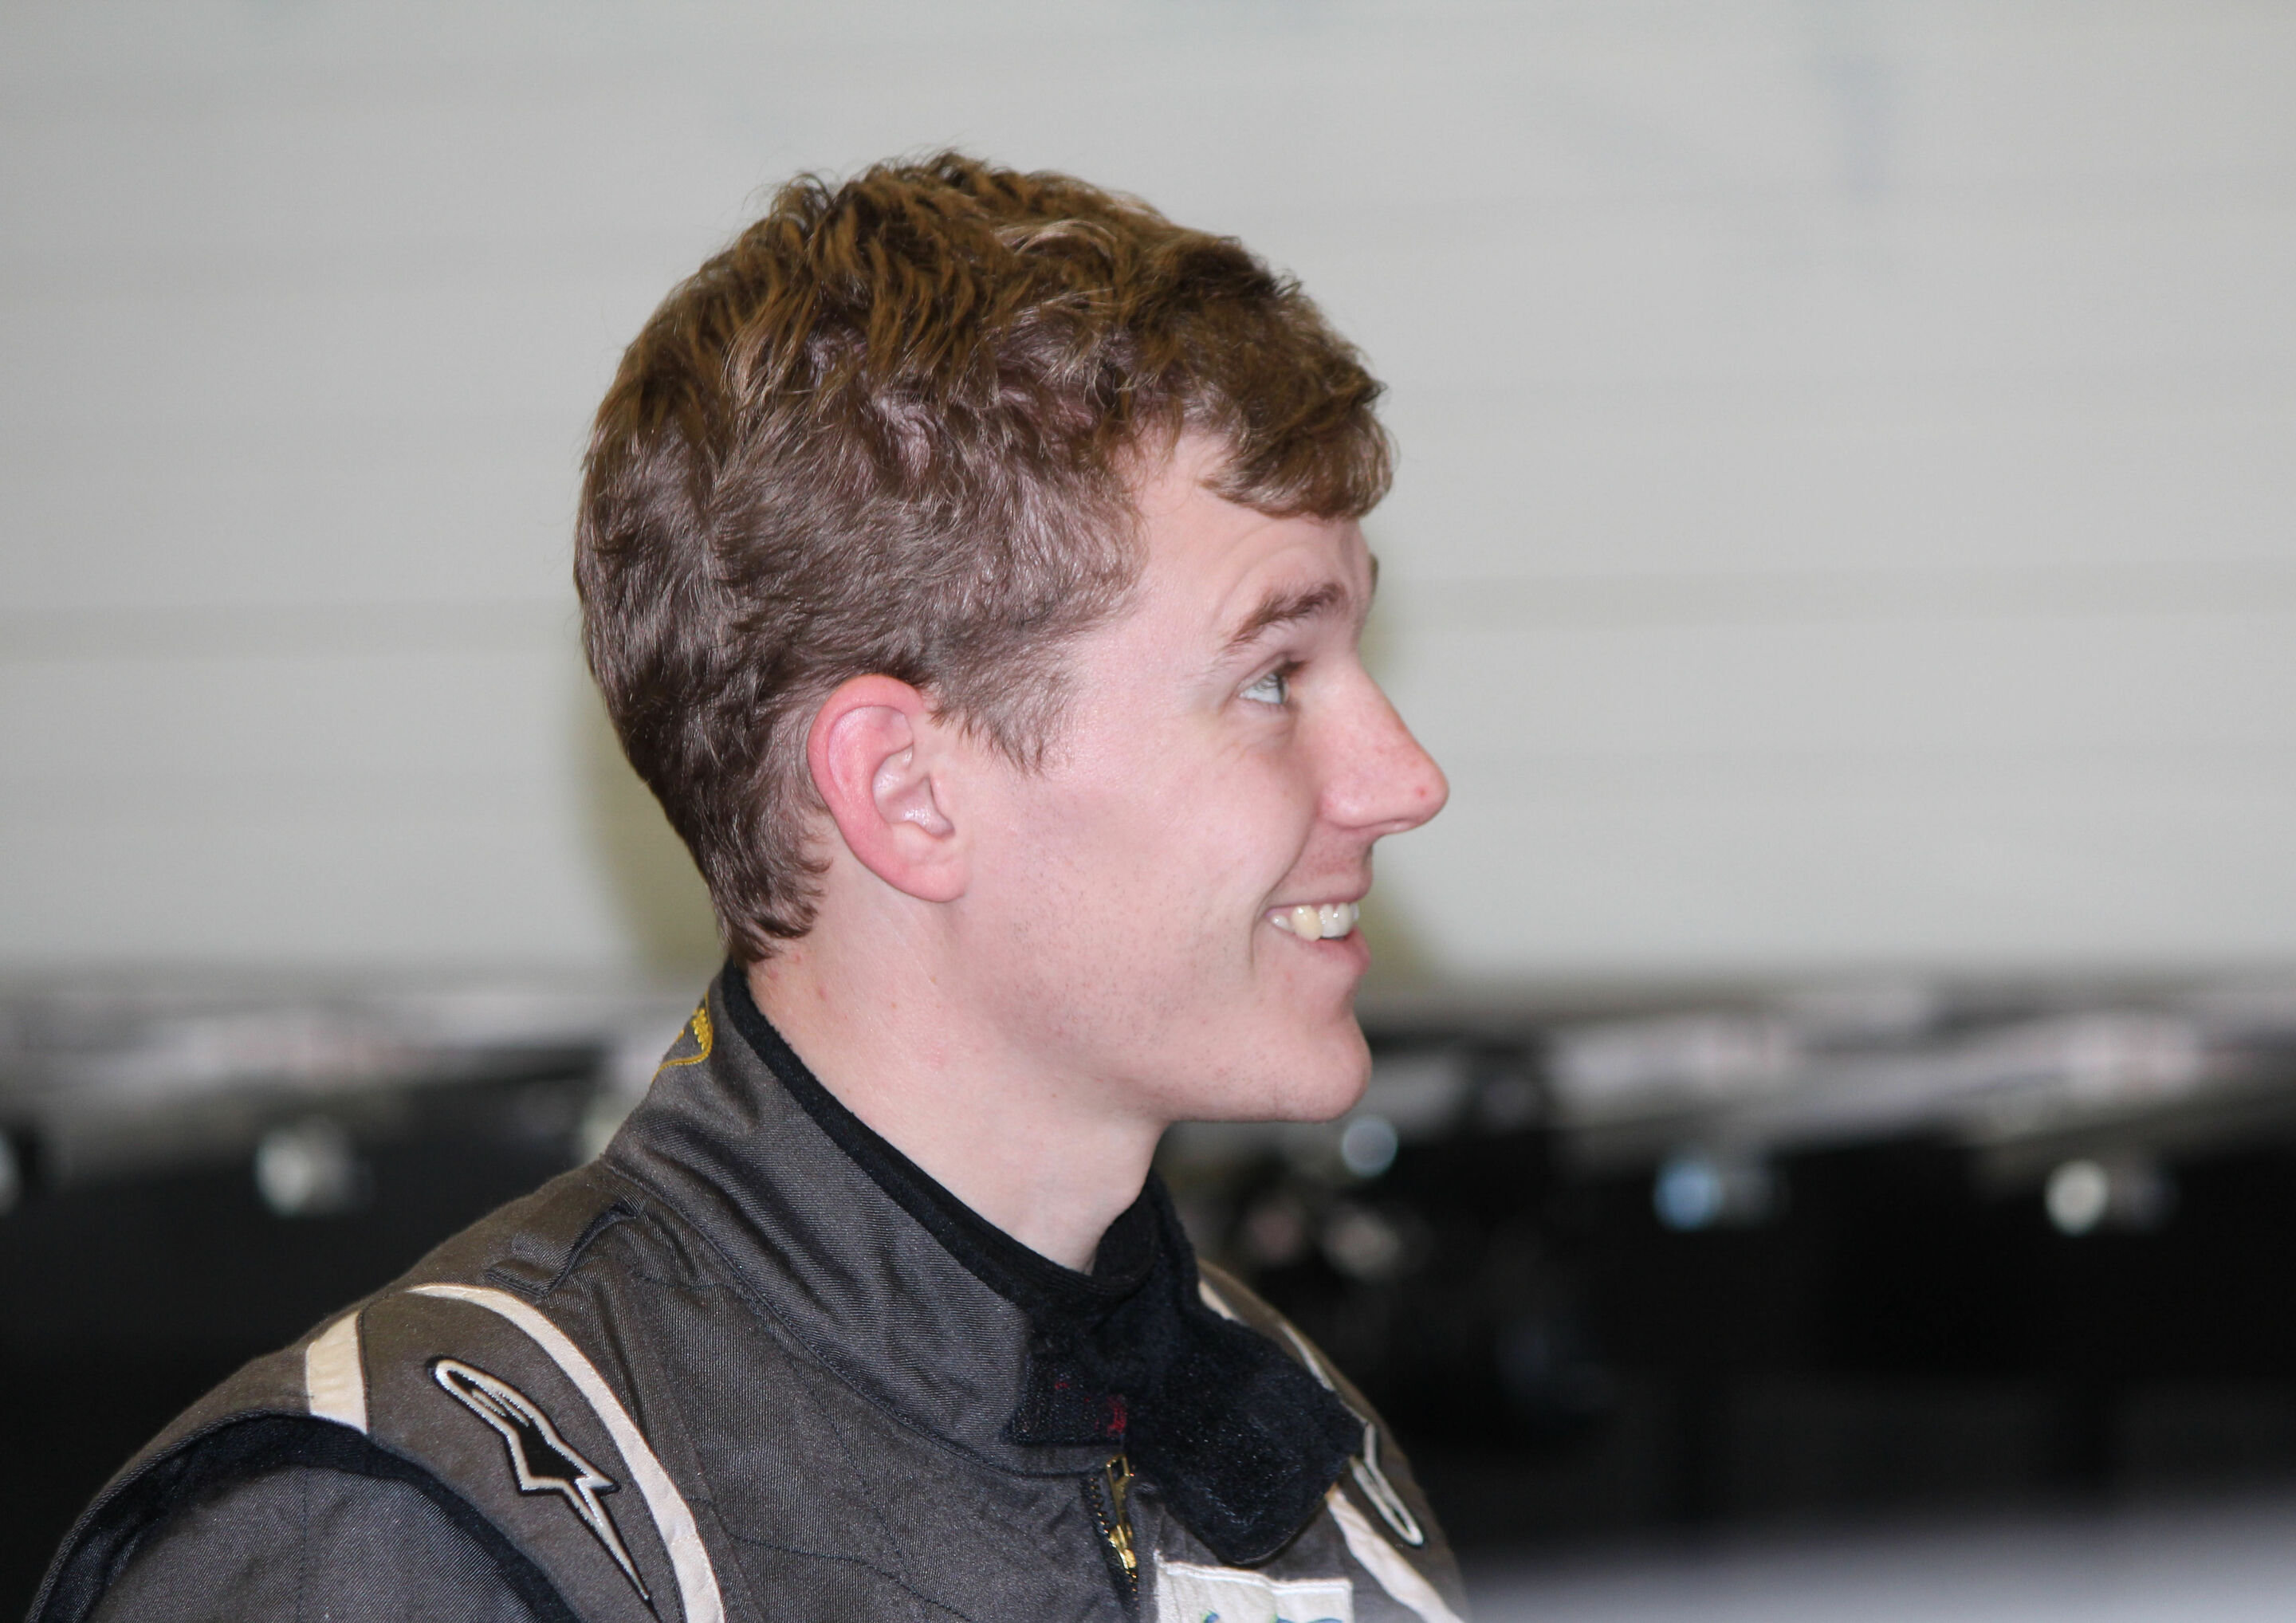 DTM Young Driver Test 2015 Jerez